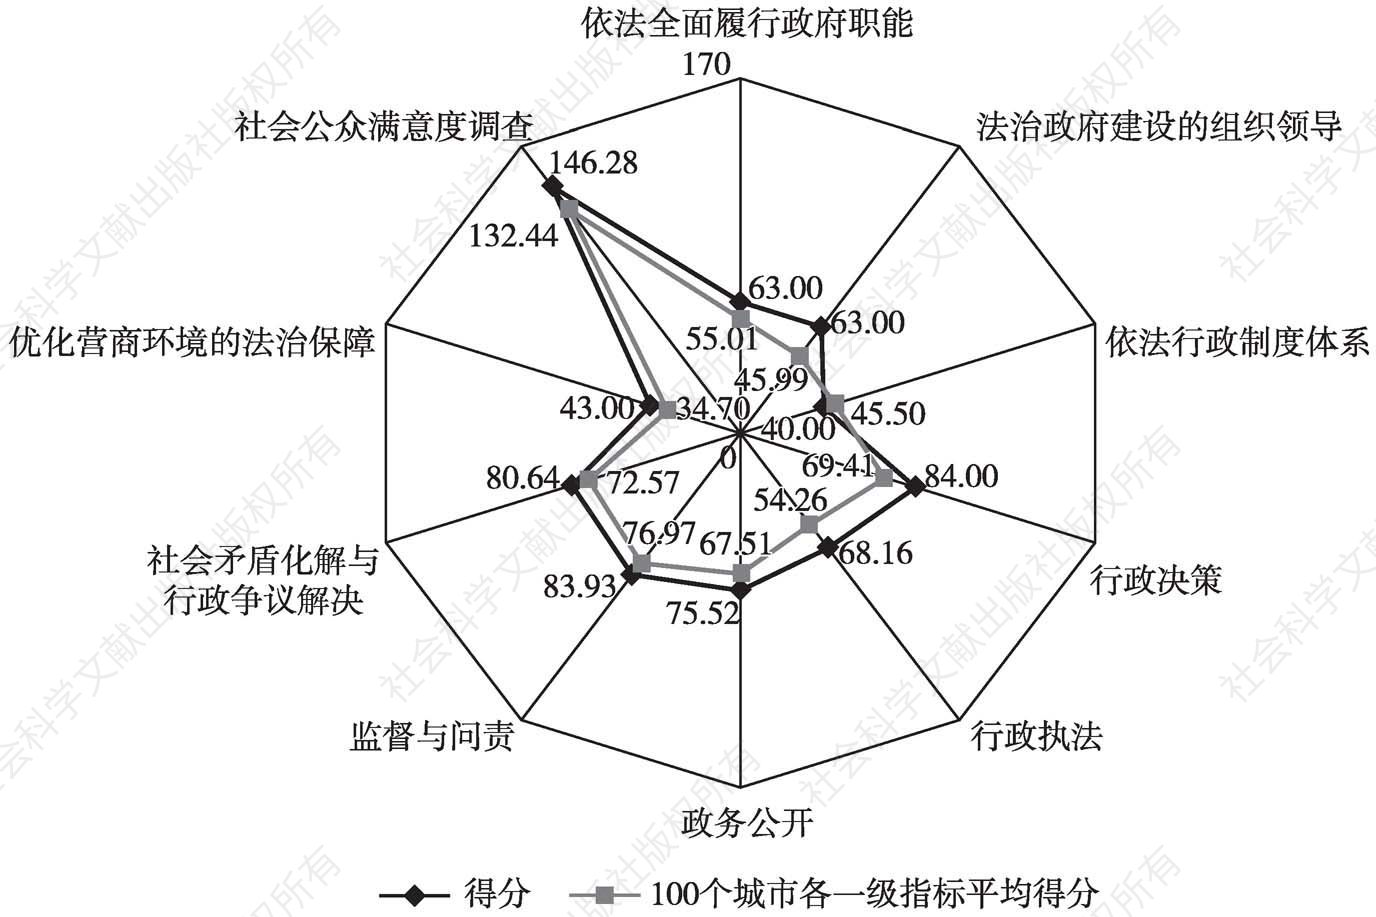 图12-51 南京市人民政府评估得分与全国平均得分比较